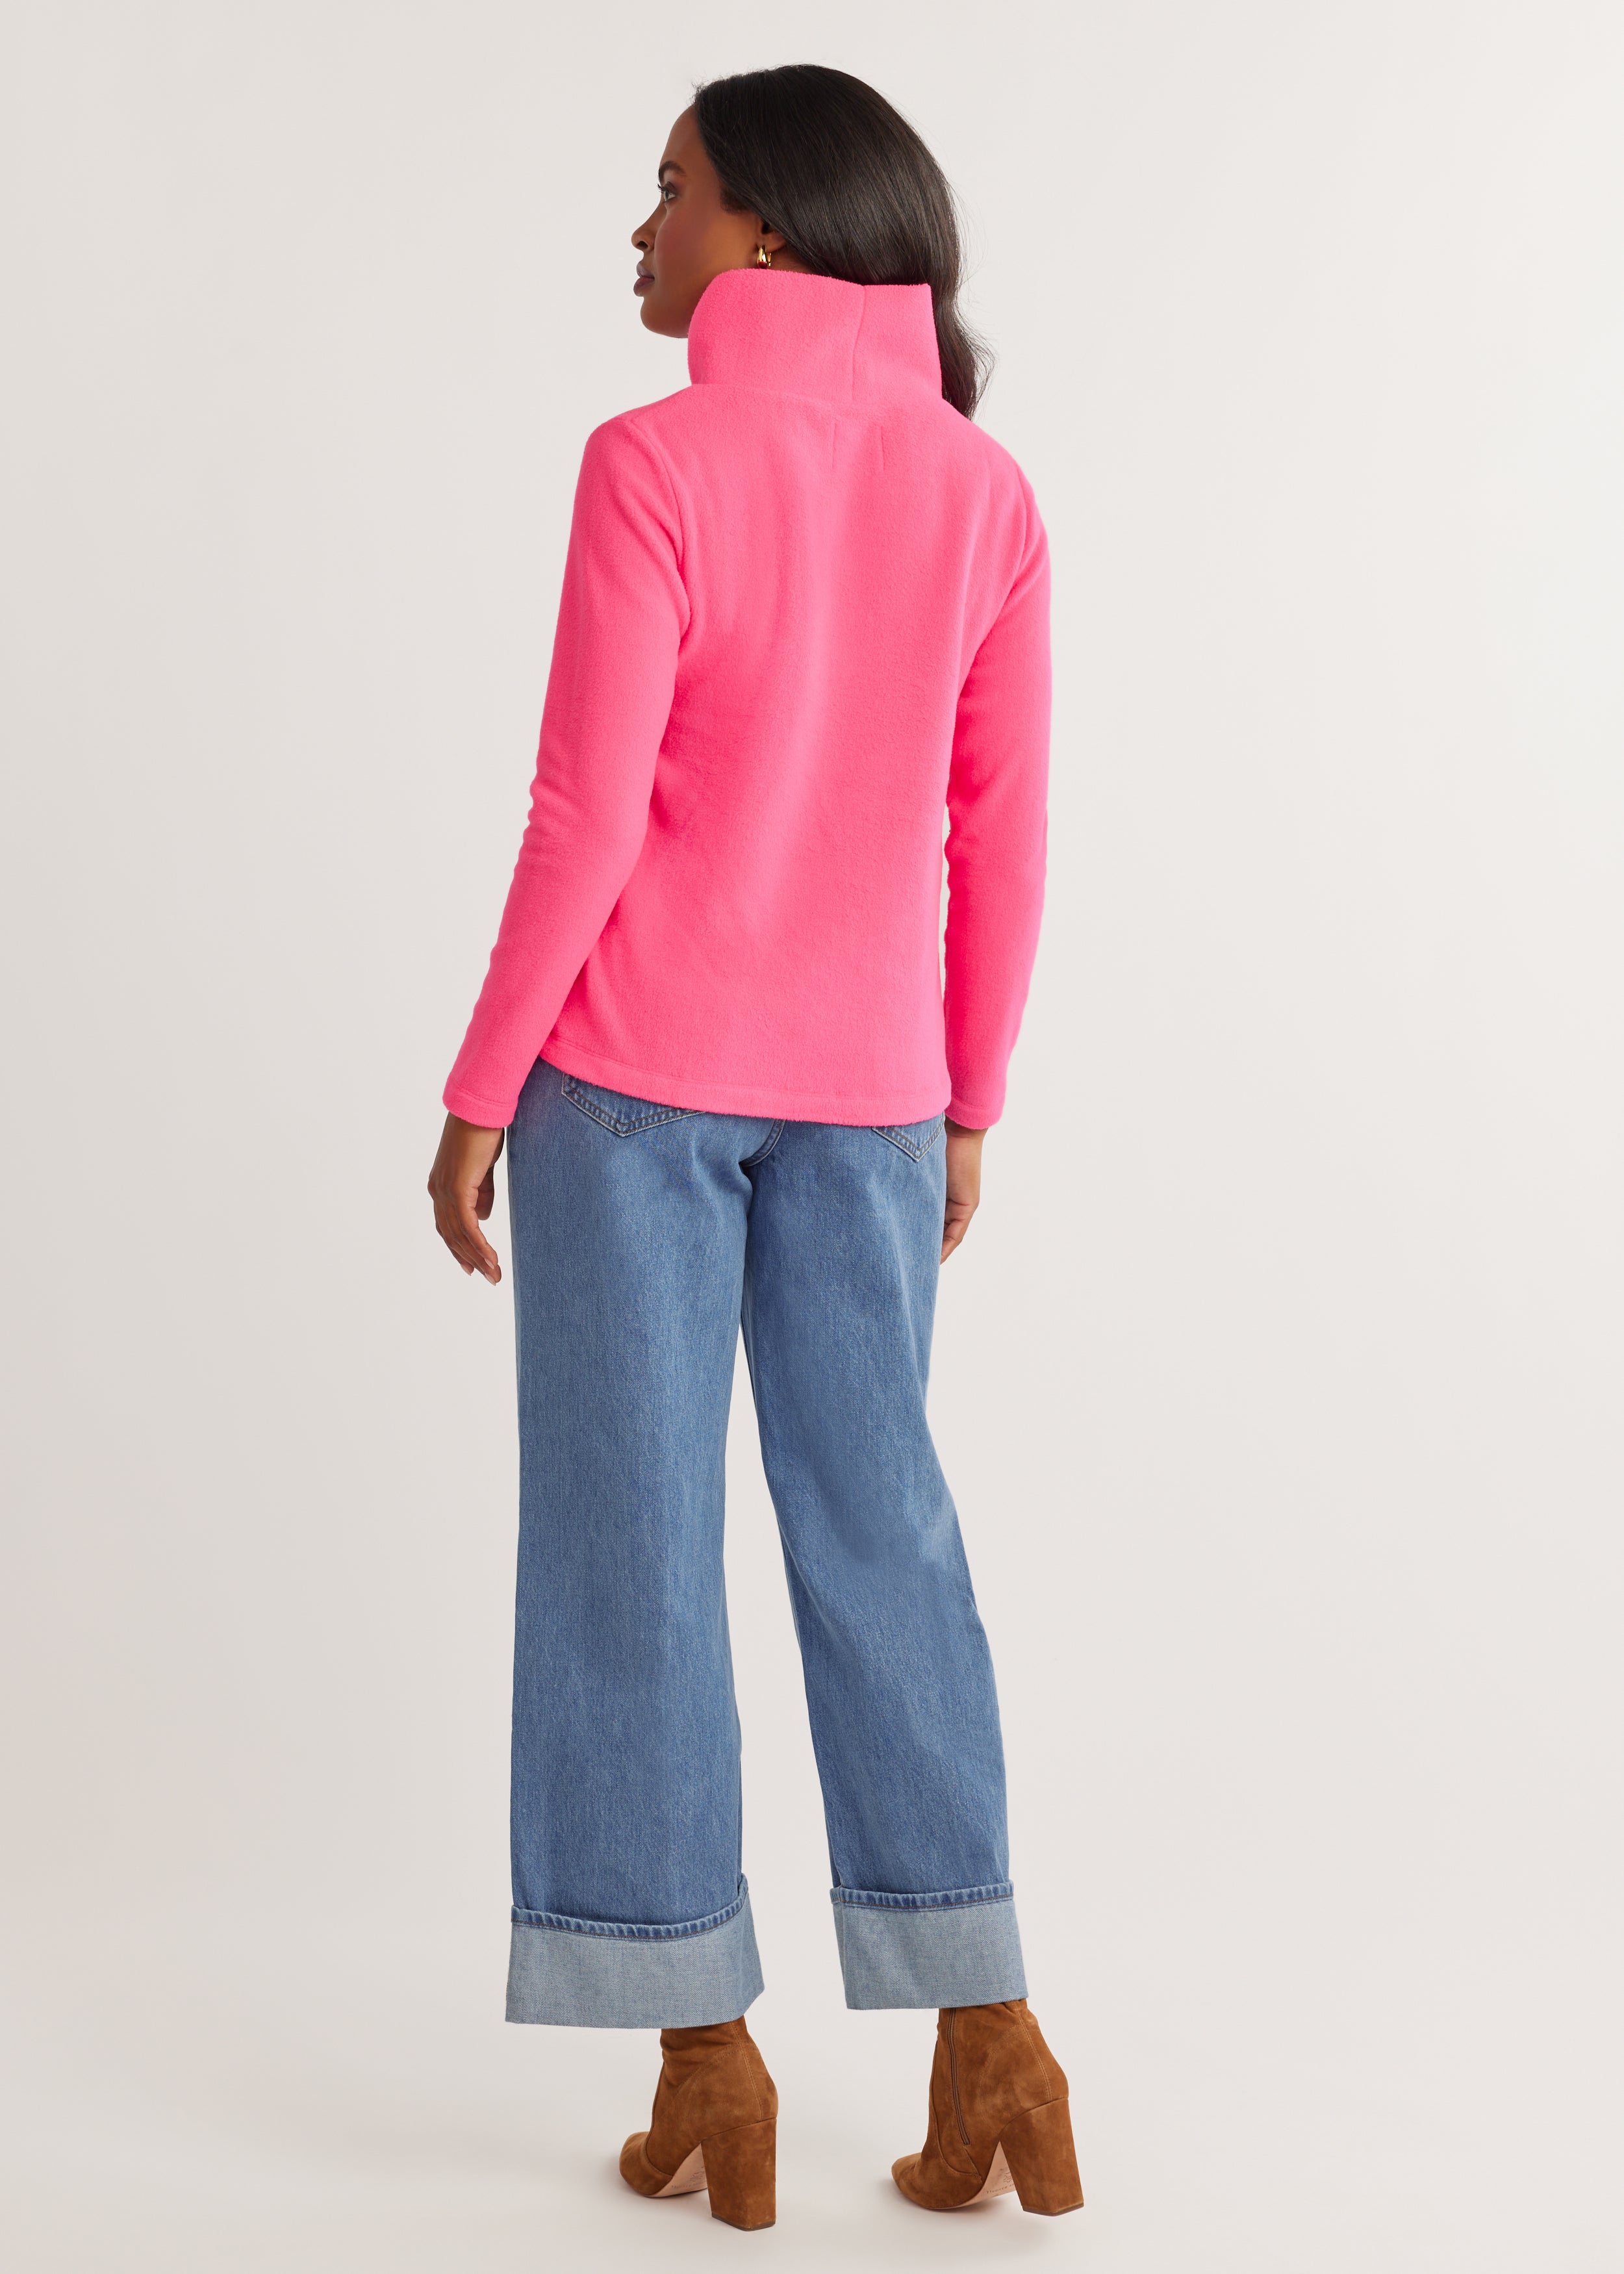 Greenpoint Turtleneck in Vello Fleece (Neon Pink) – Dudley Stephens